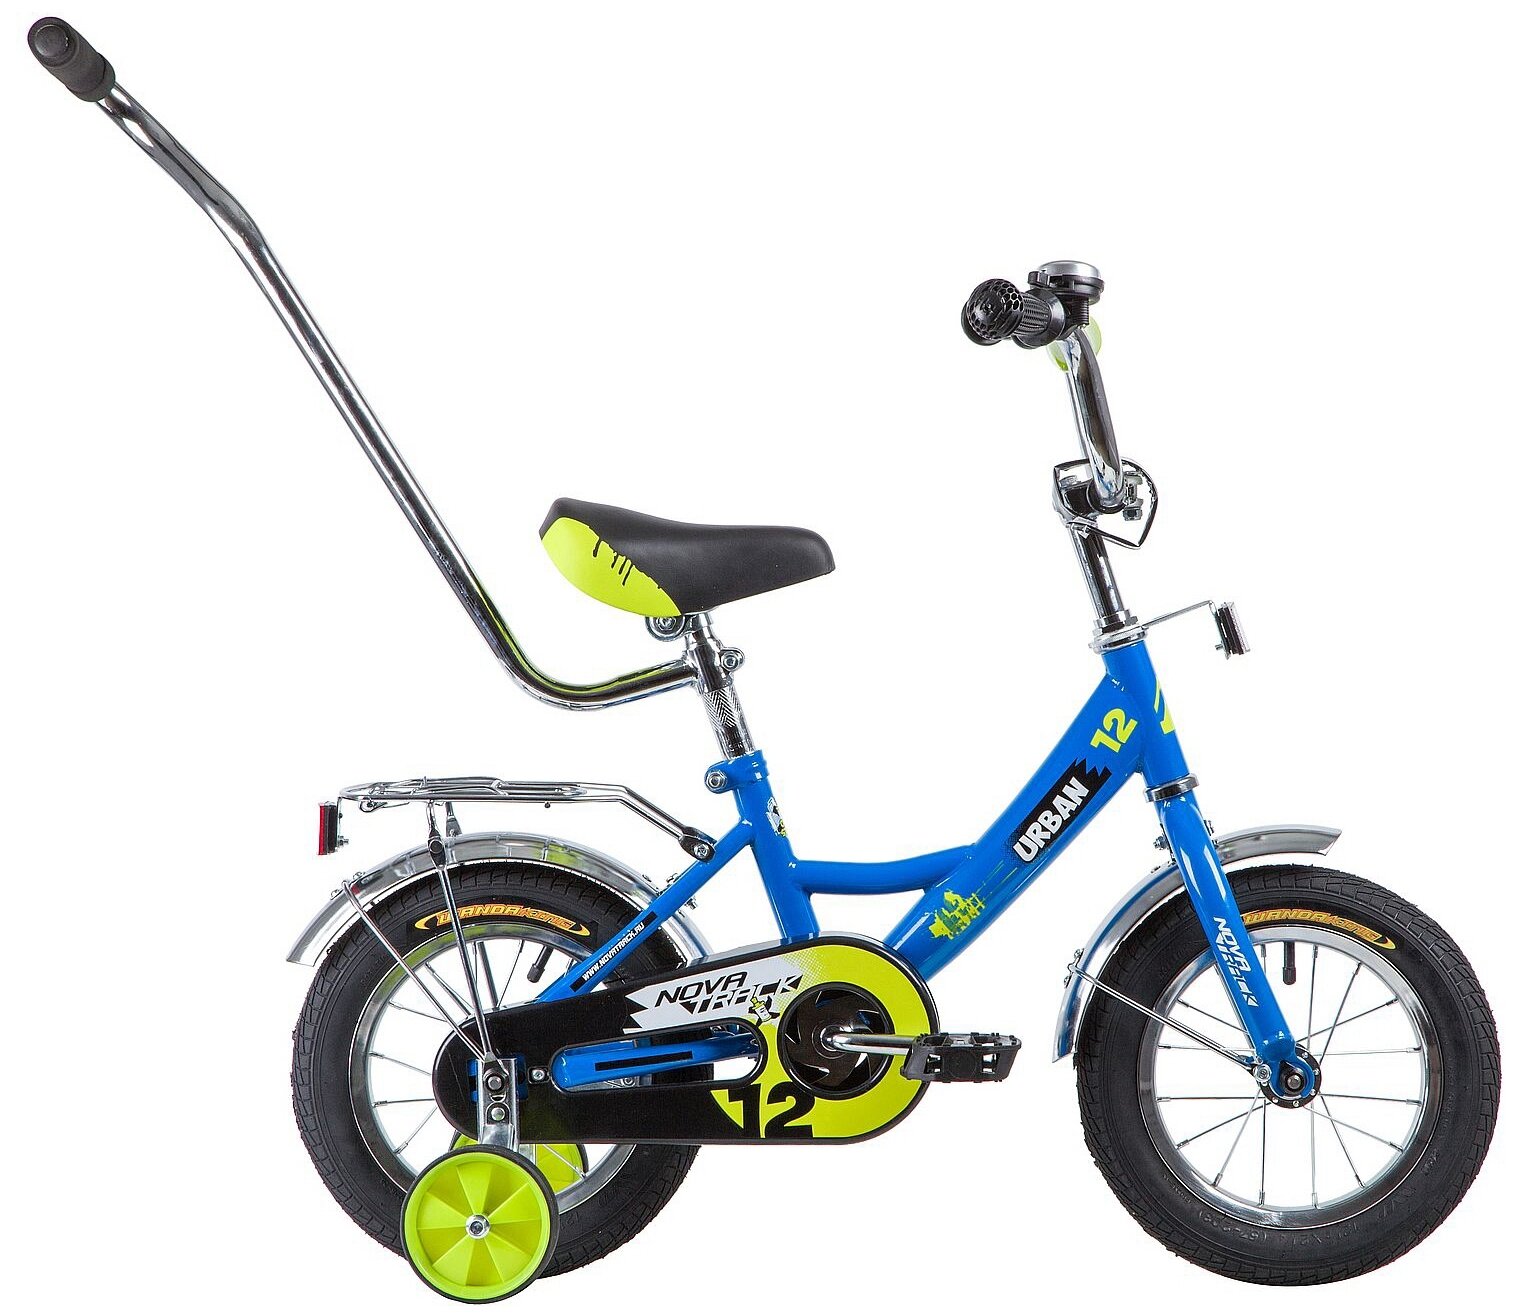 Велосипед 12 детский Novatrack Urban (2020) количество скоростей 1 рама сталь 8,5 синий